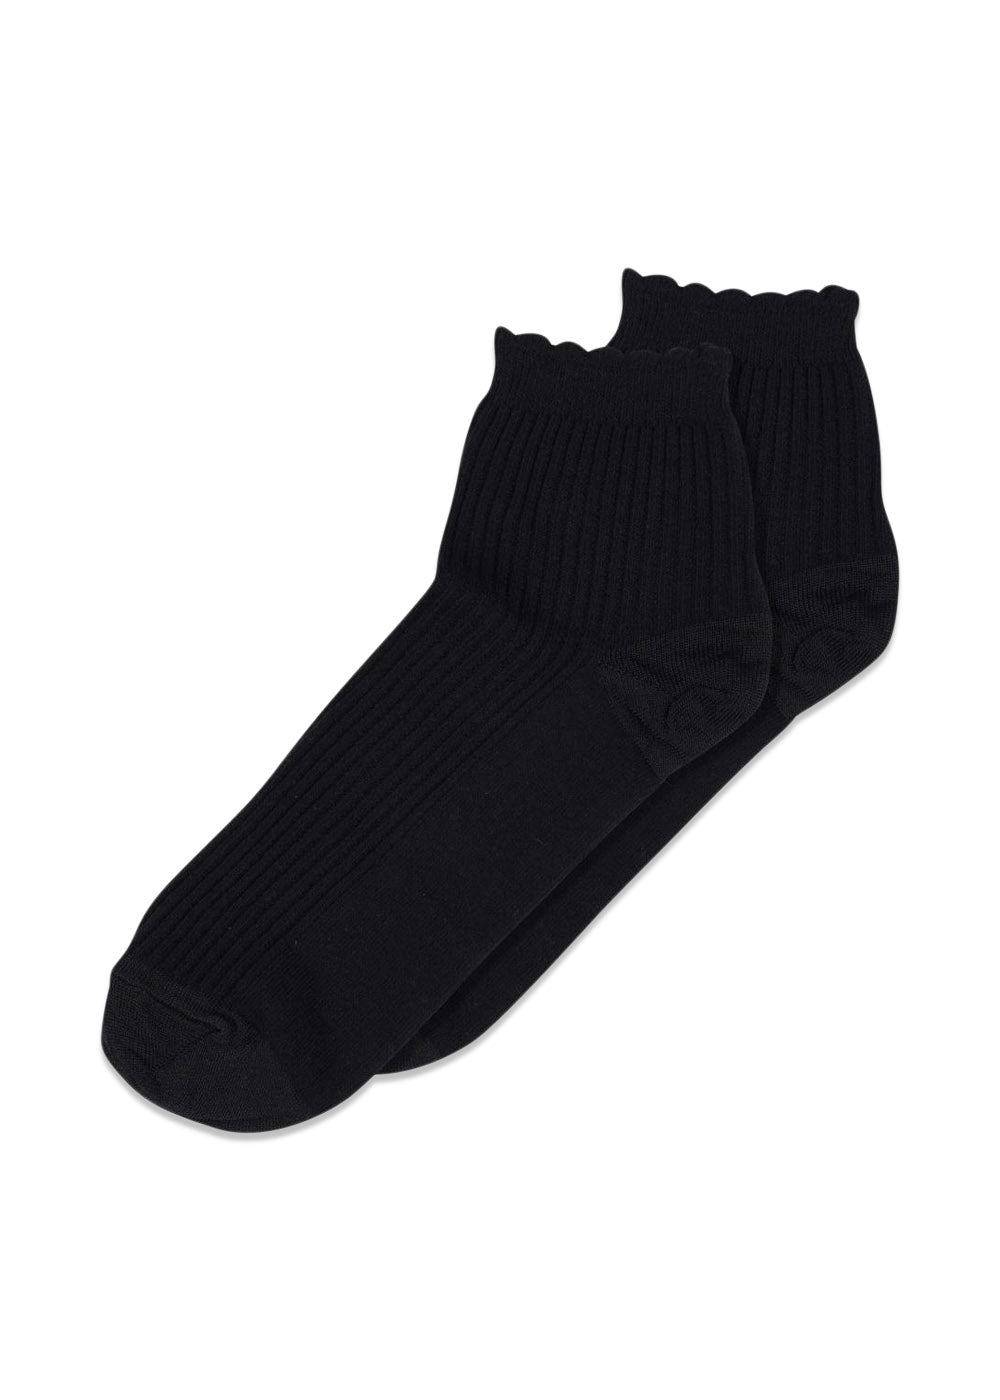 Vivian short socks - Black